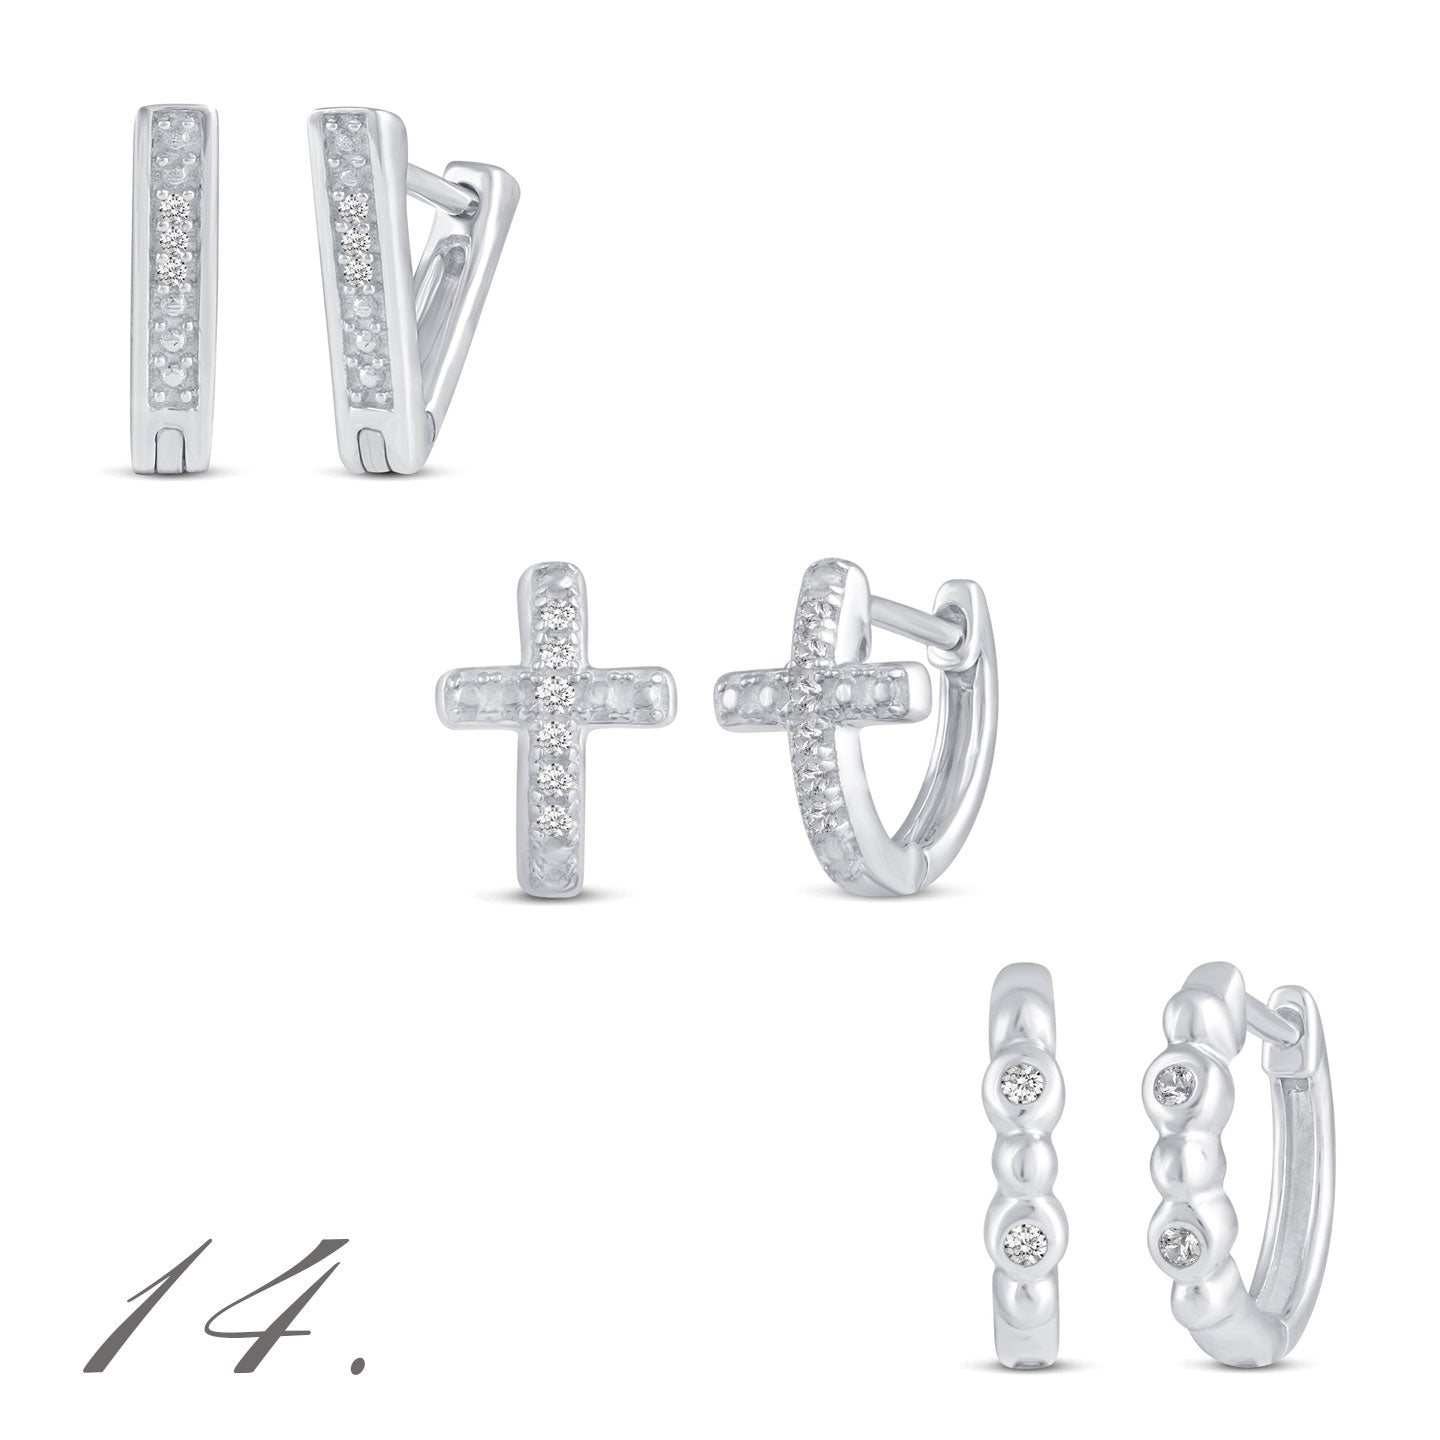 3 Pairs Set Ear Party 1/10 -1/20 Cttw Natural Diamond Earrings in 925 Sterling Silver cross huggies hoops 